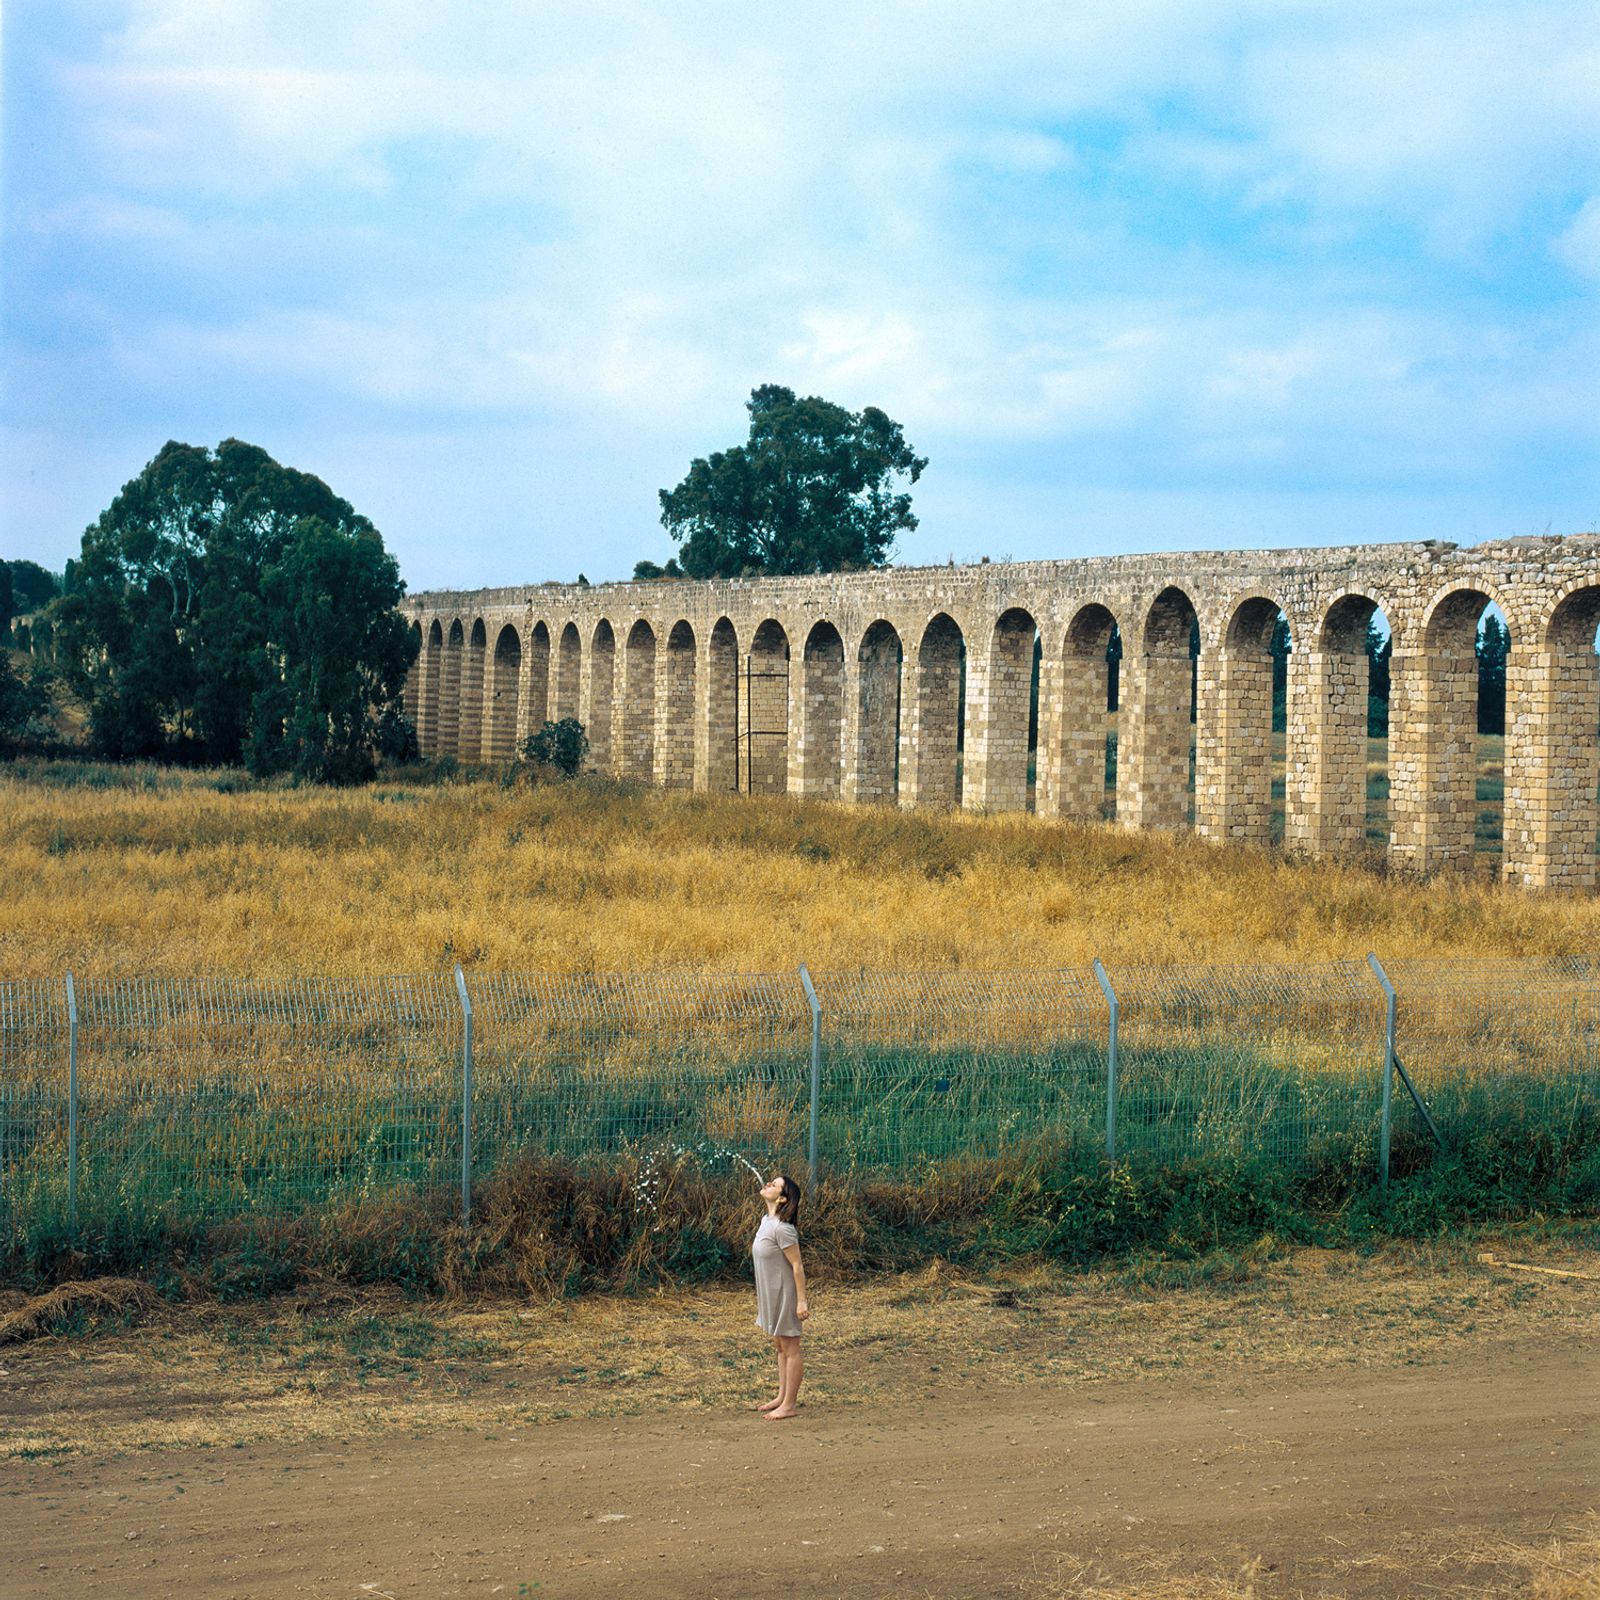 © Sivan Elirazi - A morning at the aqueduct